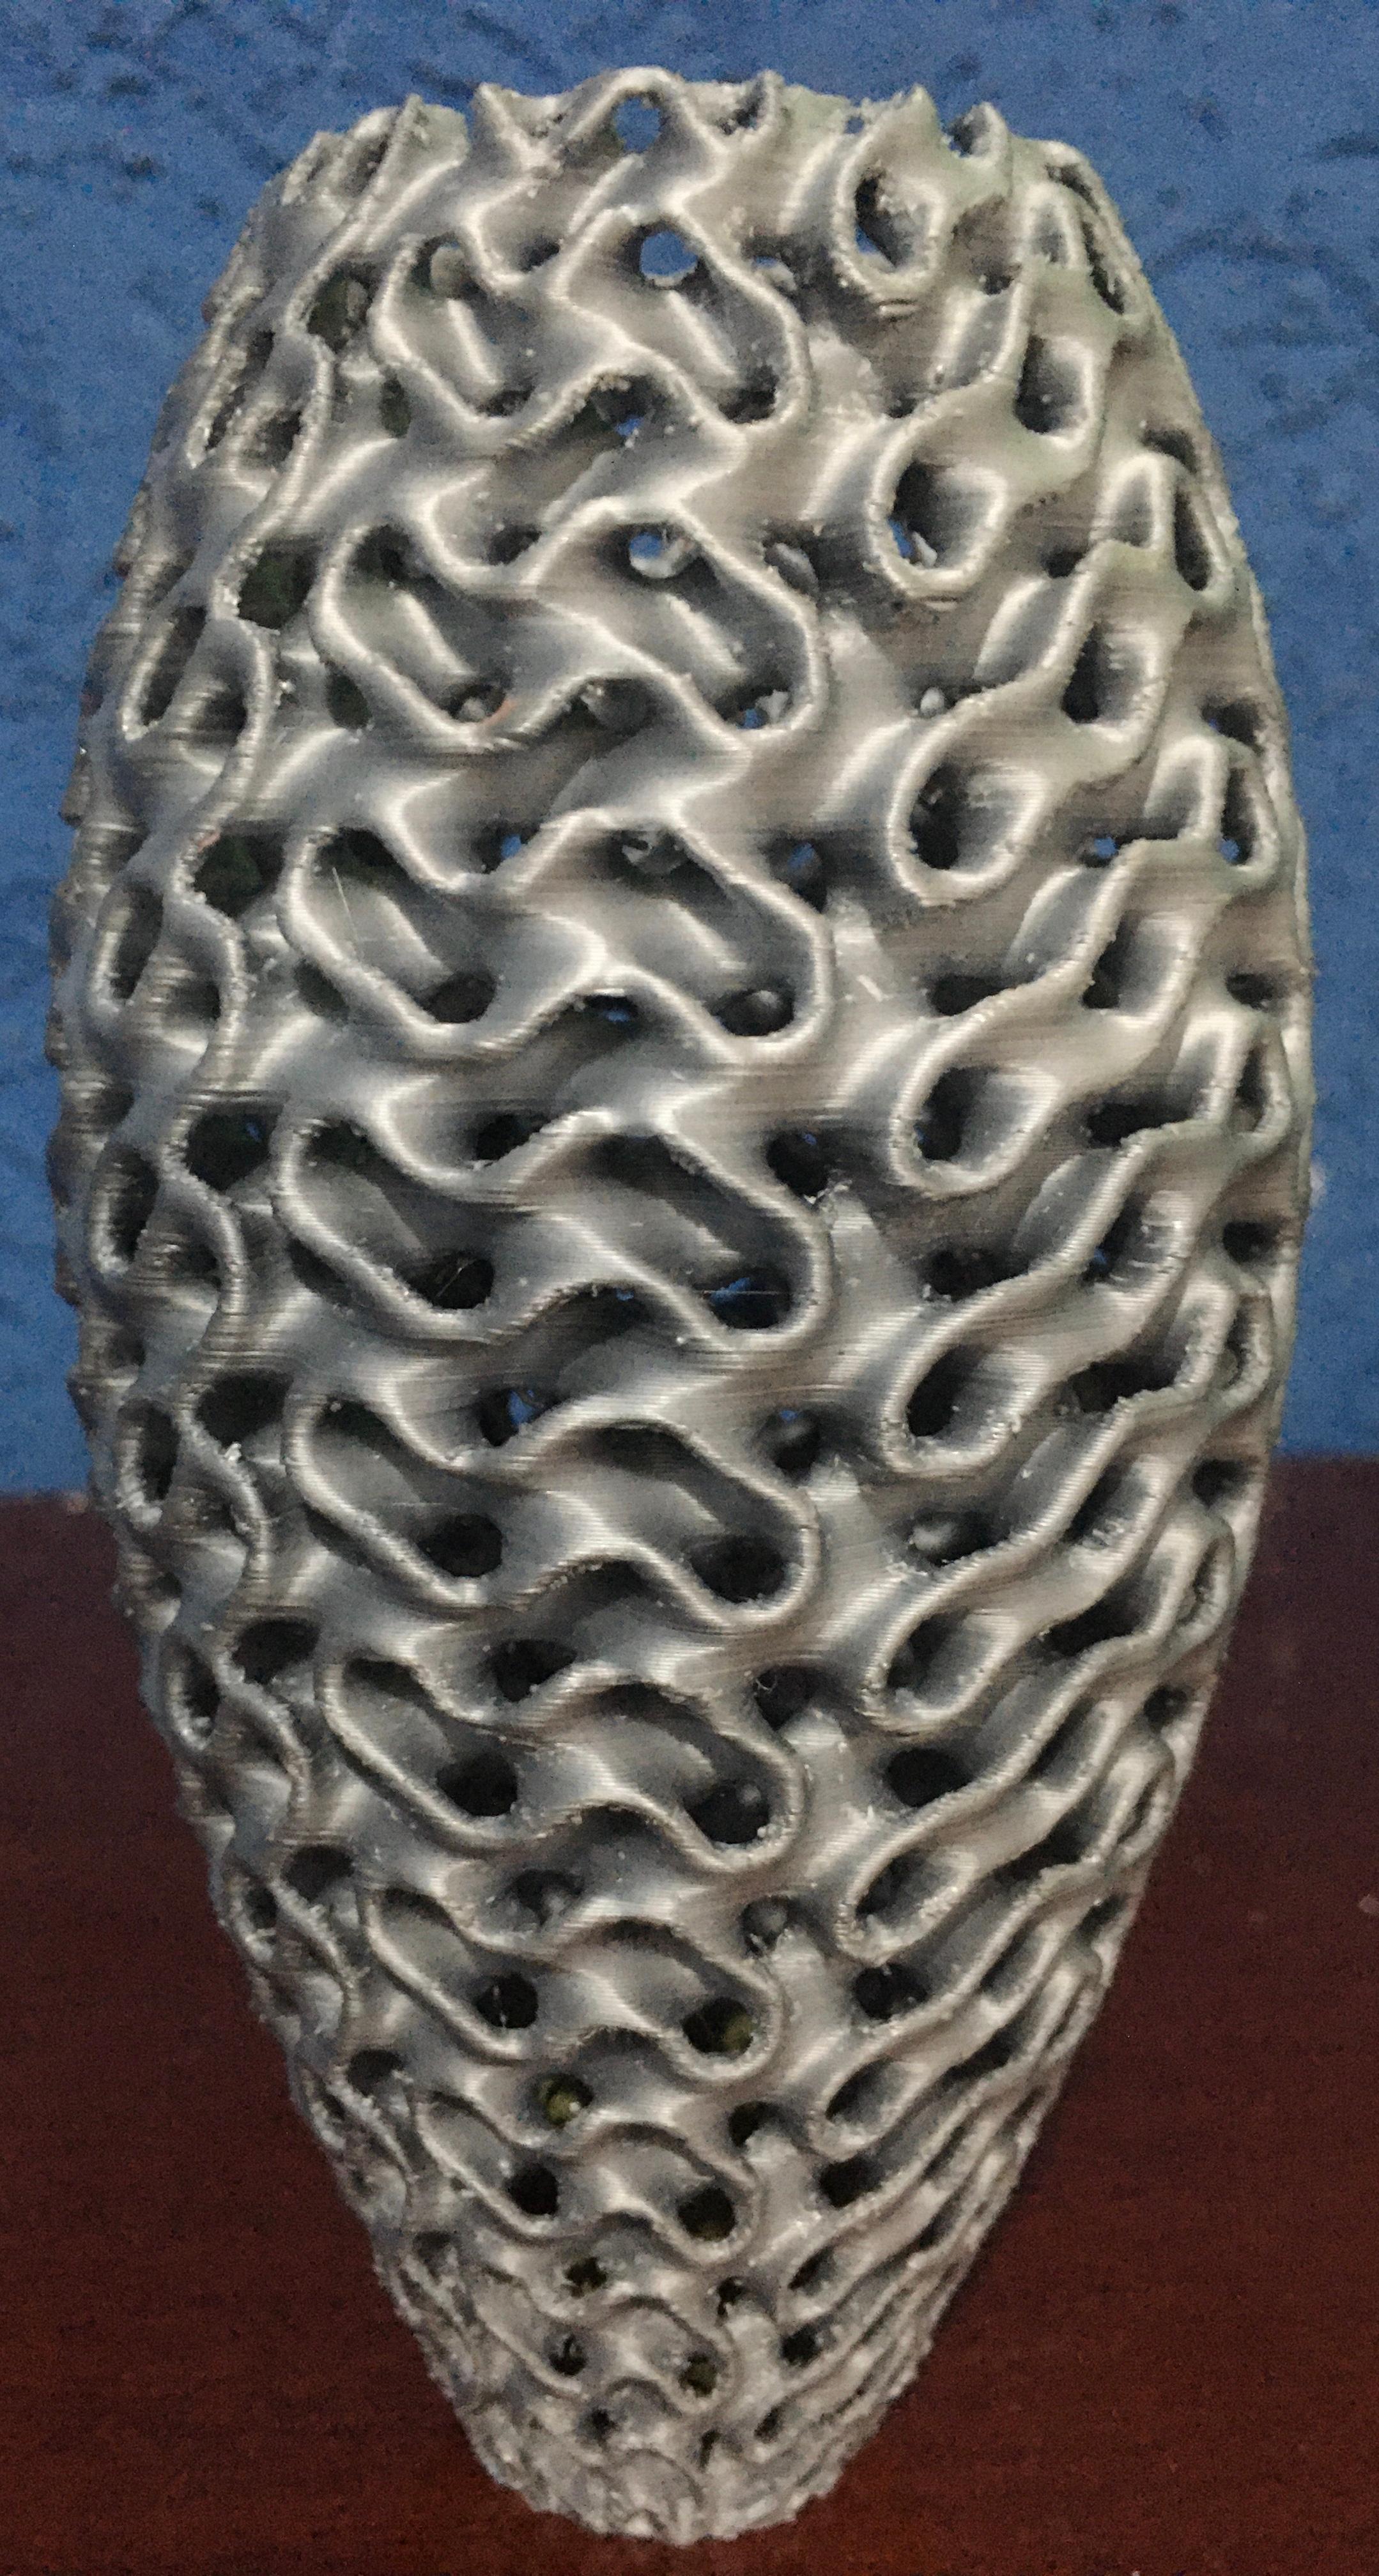 Gyroid Vase 3d model